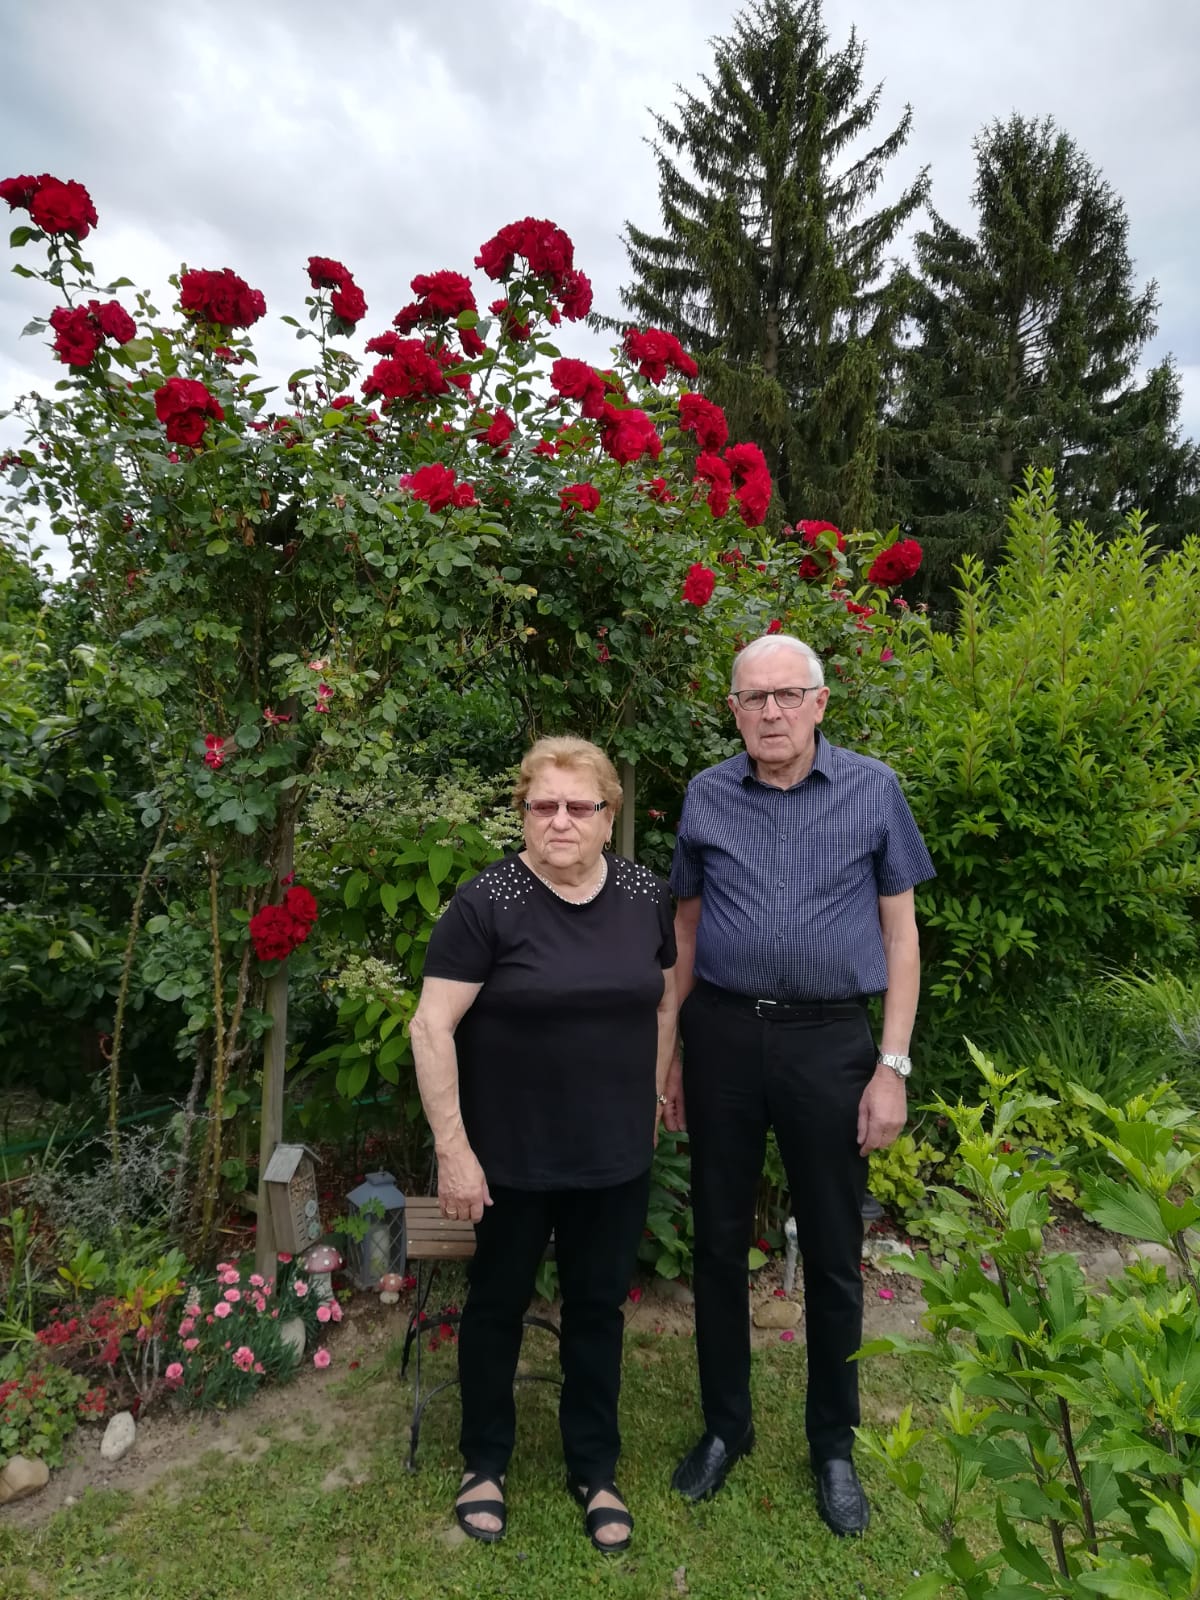 Noces d’orchidée (55 ans de mariage) du couple Elise et Joseph WEISSBECK